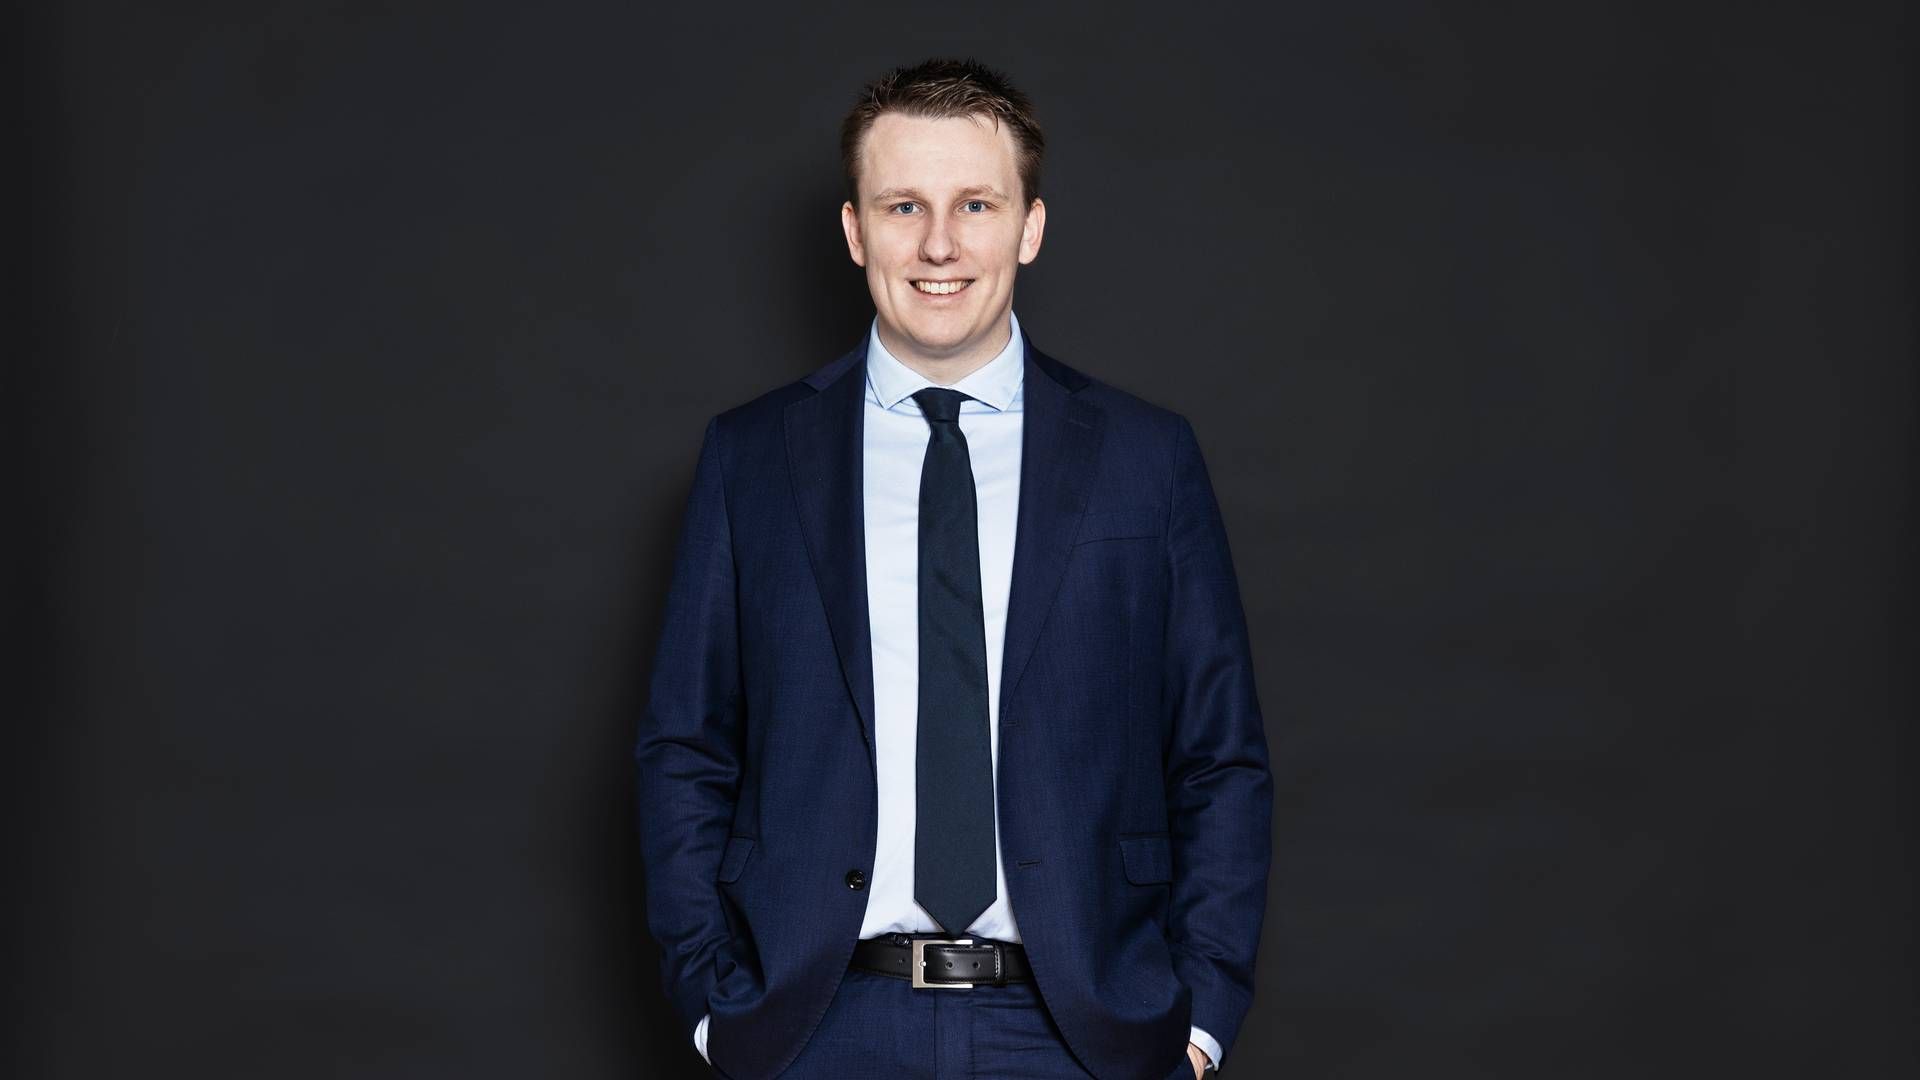 32-årige Mads Søby er ved årsskiftet indtrådt som medejer i Mehl & Schierbeck Advokater. Han arbejder primært med entrepriseret, erstatningsret, rådgiveransvar og fast ejendom i bred forstand. | Foto: Stine Heilmann